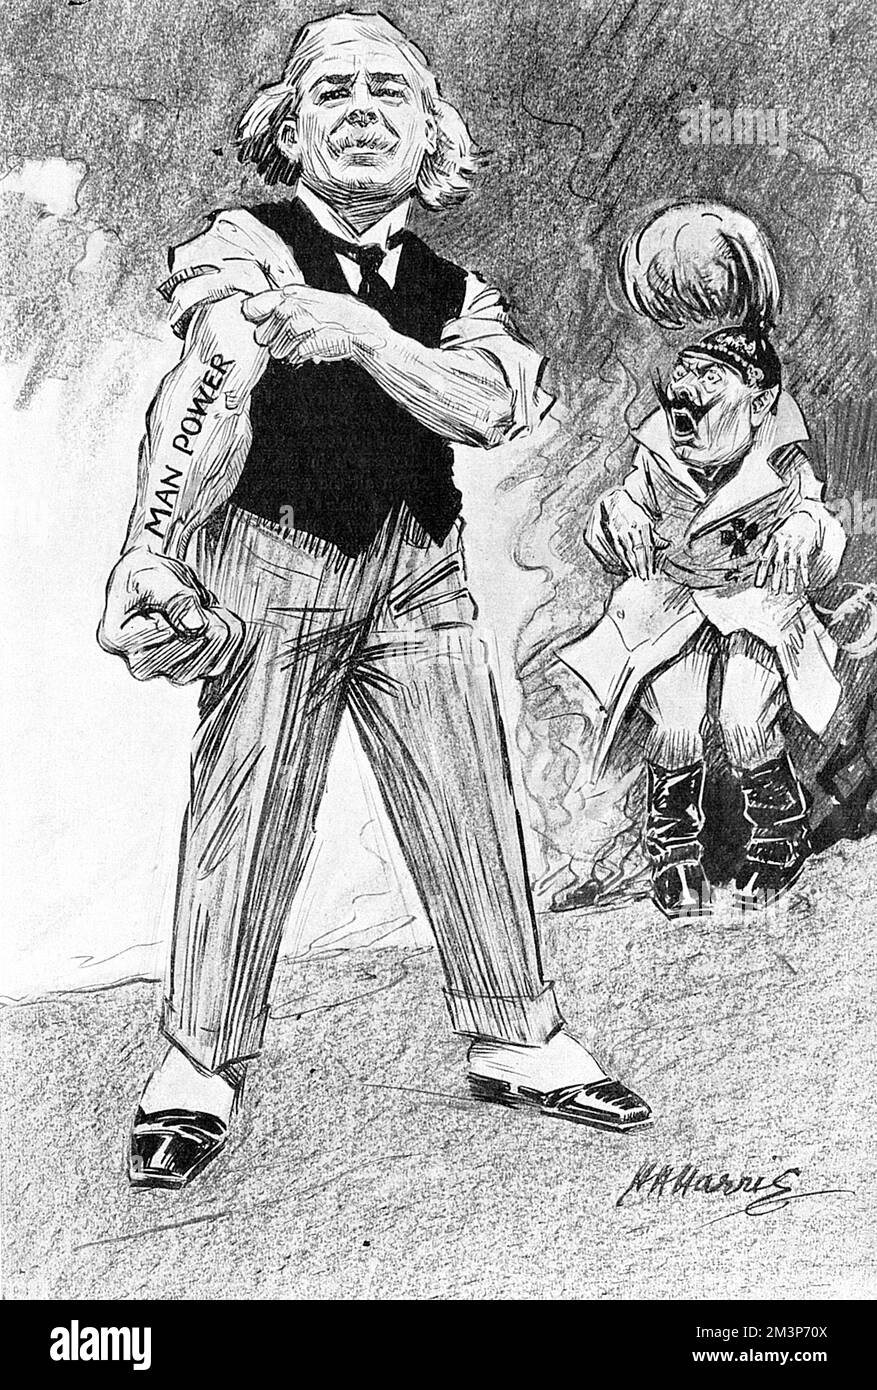 Zeichentrickfilm über die britische Personalkrise von 1918, der jedoch Premierminister Lloyd George in positives Licht wirft und einen muskulösen Unterarm zeigt, während der Kaiser im Hintergrund zittert. Datum: 1918 Stockfoto